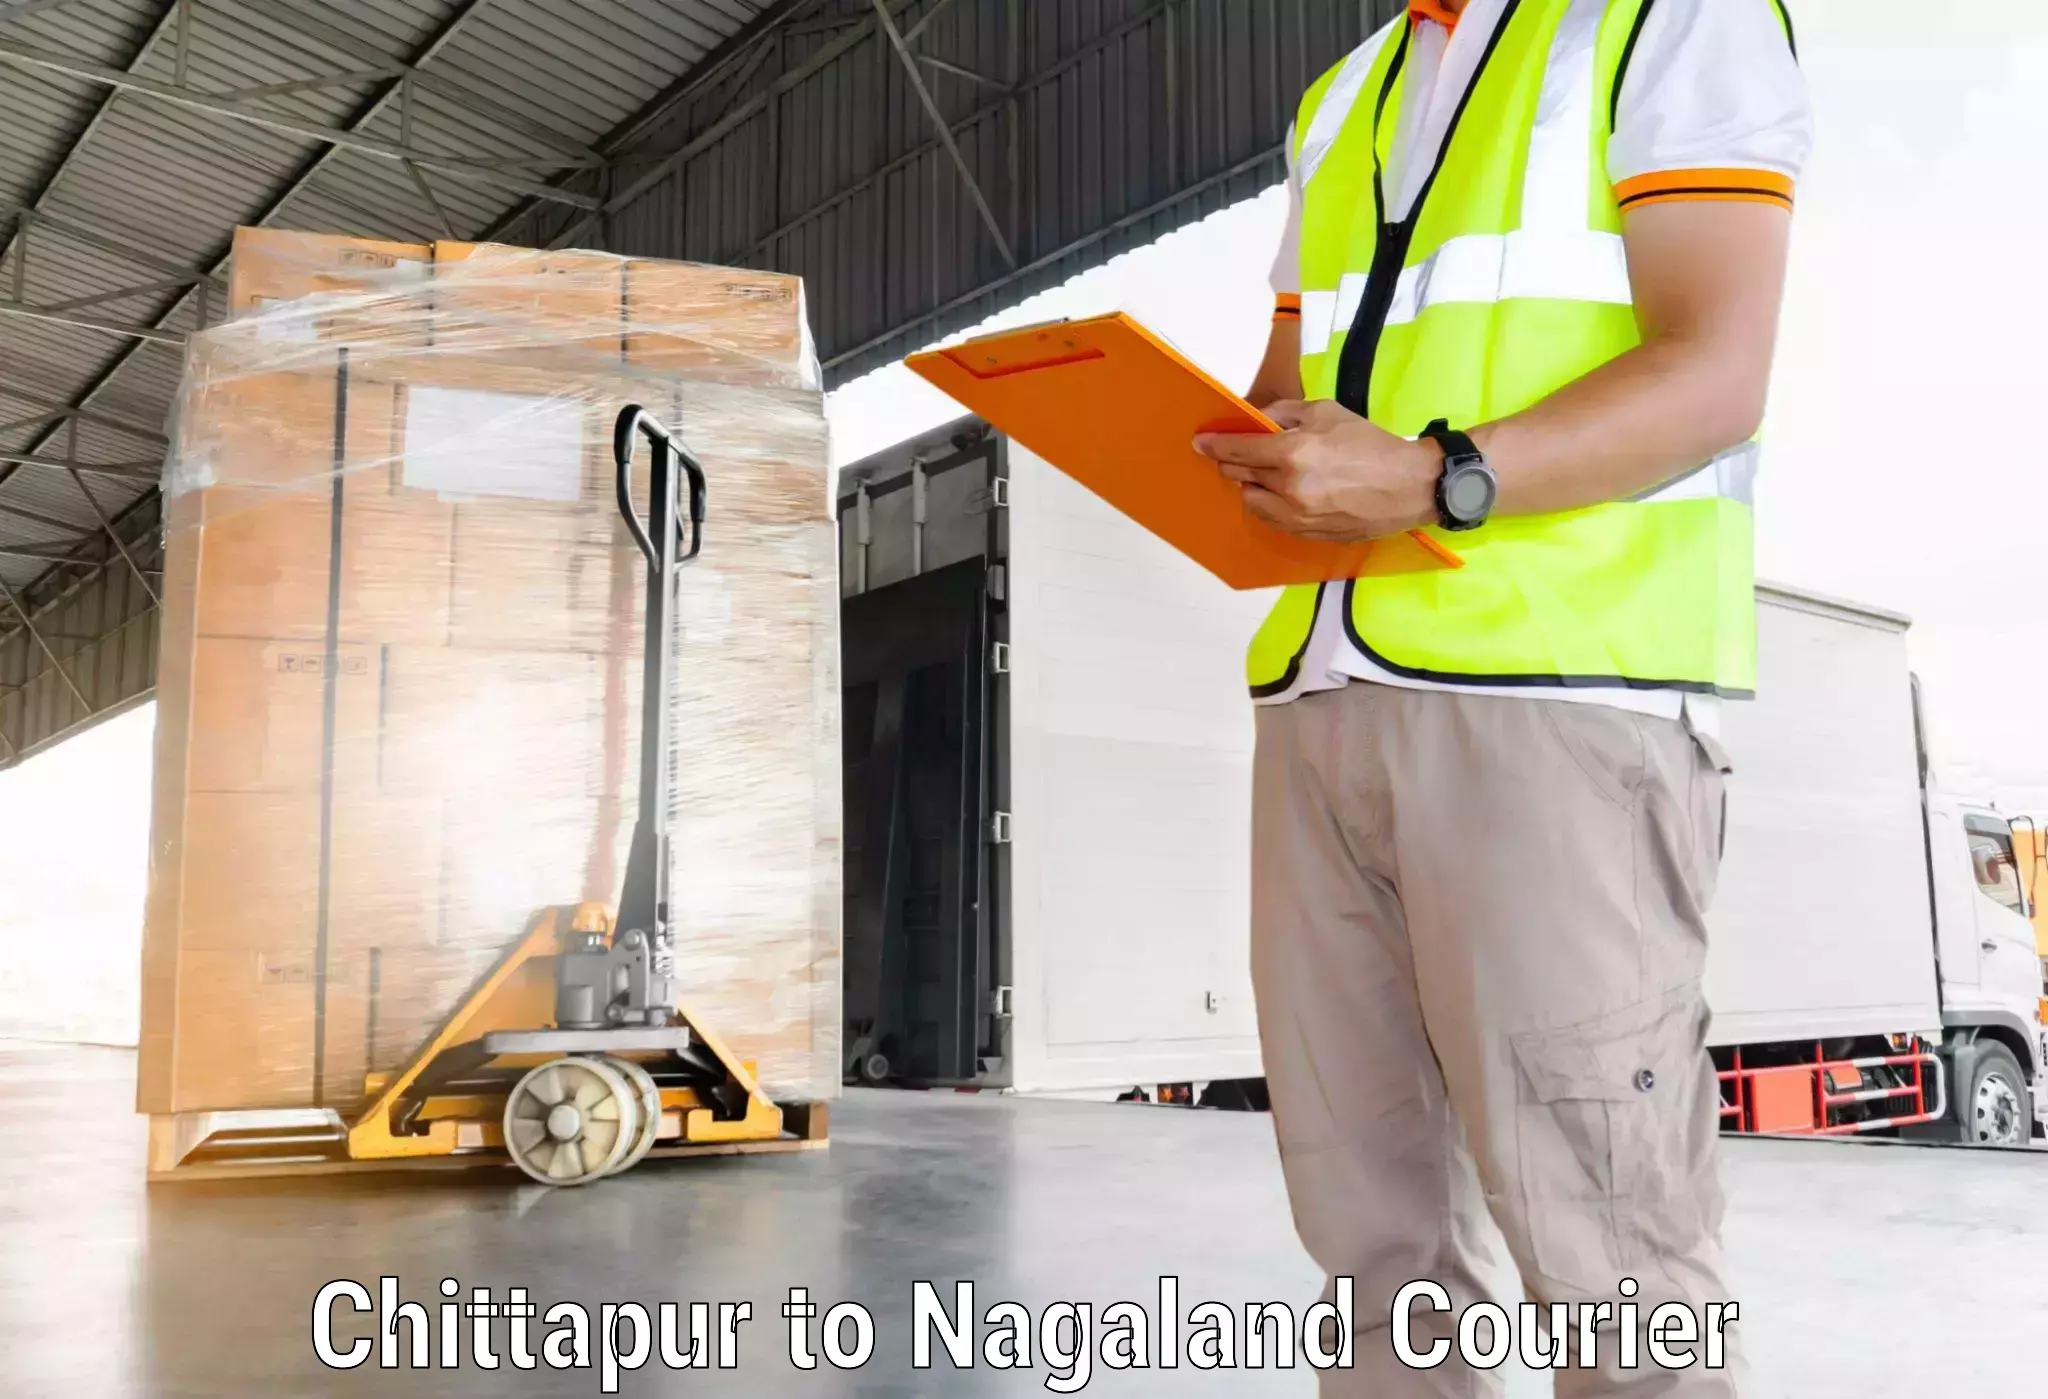 Digital shipping tools Chittapur to NIT Nagaland